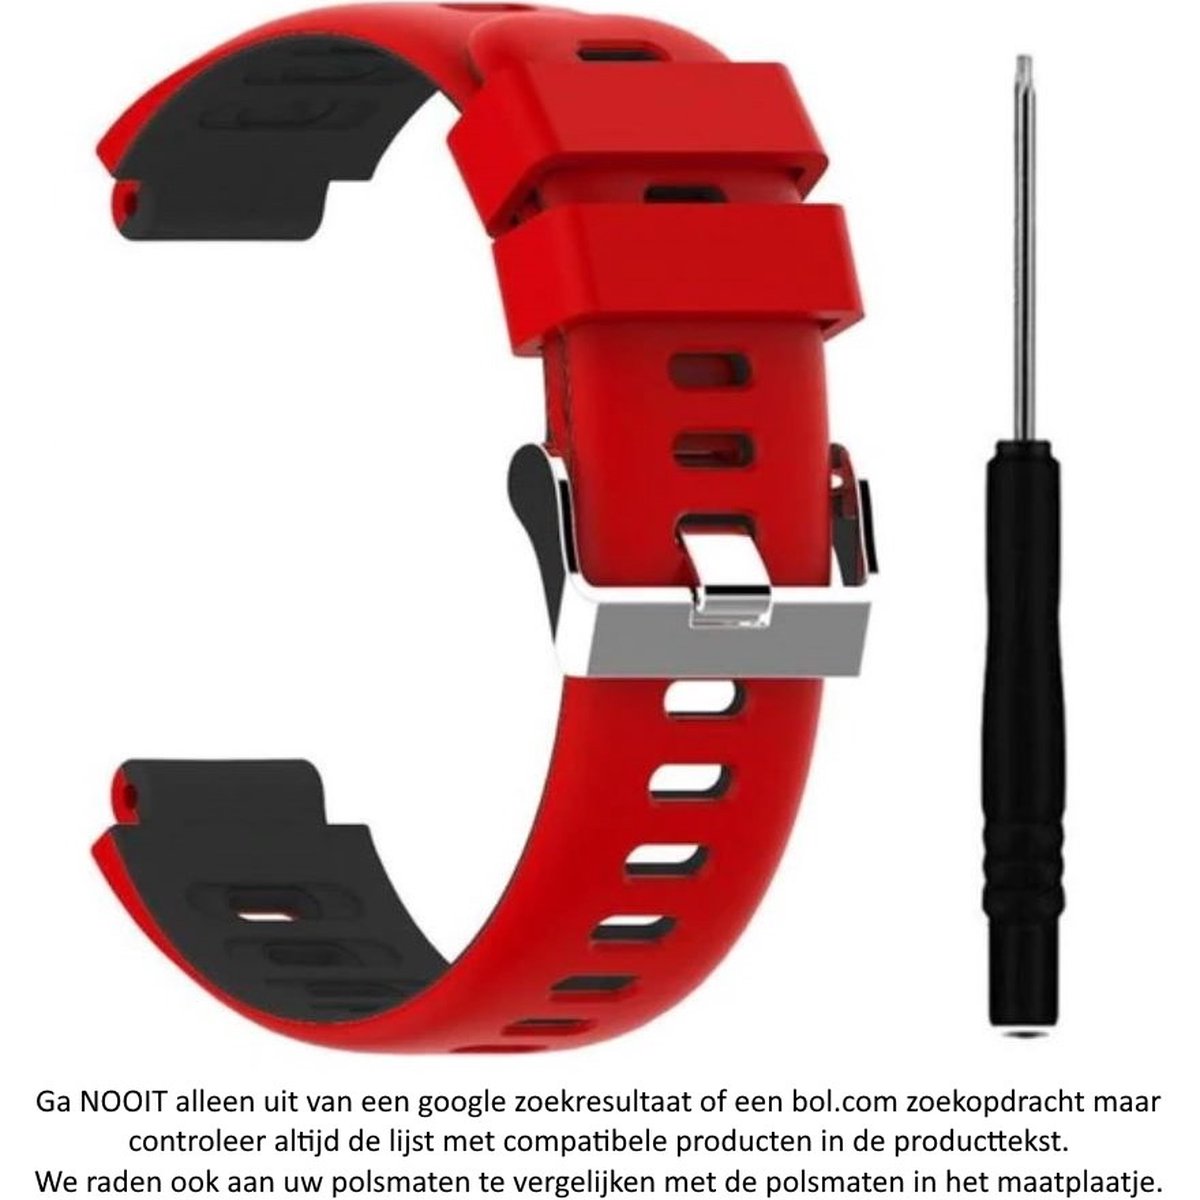 Rood Zwart siliconen sporthorlogebandje geschikt voor de Garmin Forerunner 220, 230, 235, 620, 630, 735XT, Approach S20, S5 S6 - horlogeband - Maat: zie maatfoto - polsband - strap - siliconen - rubber